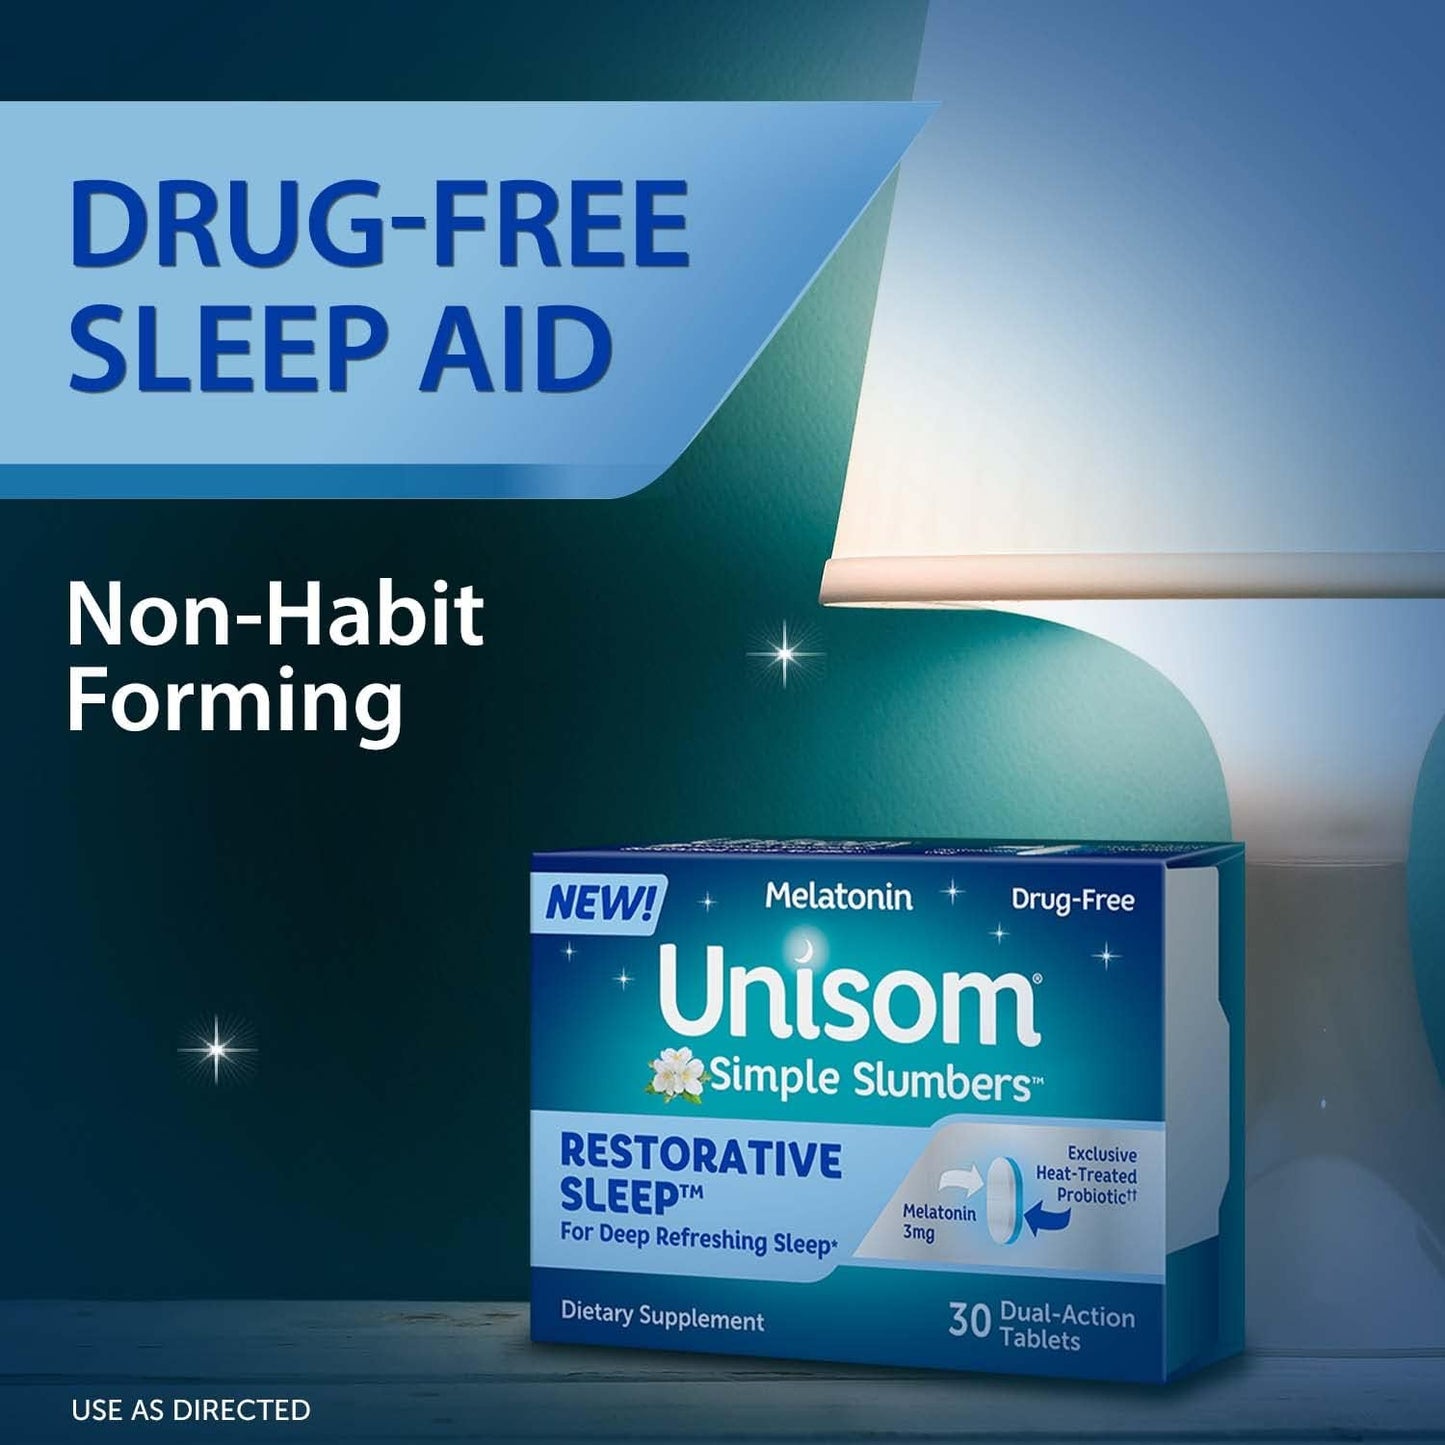 Unisom Simple Slumbers Restorative Sleep Tablets 30-Count, Melatonin 3mg